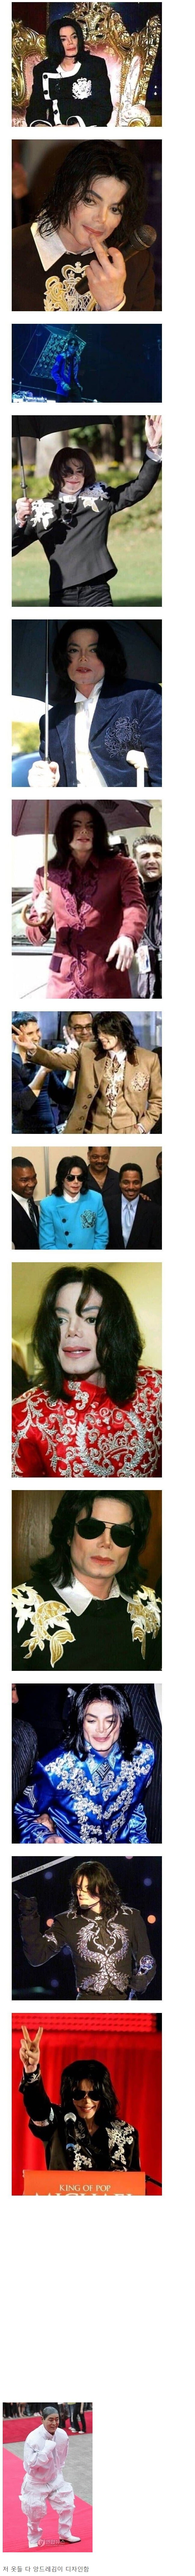 マイケル·ジャクソンファッションの真実jpg